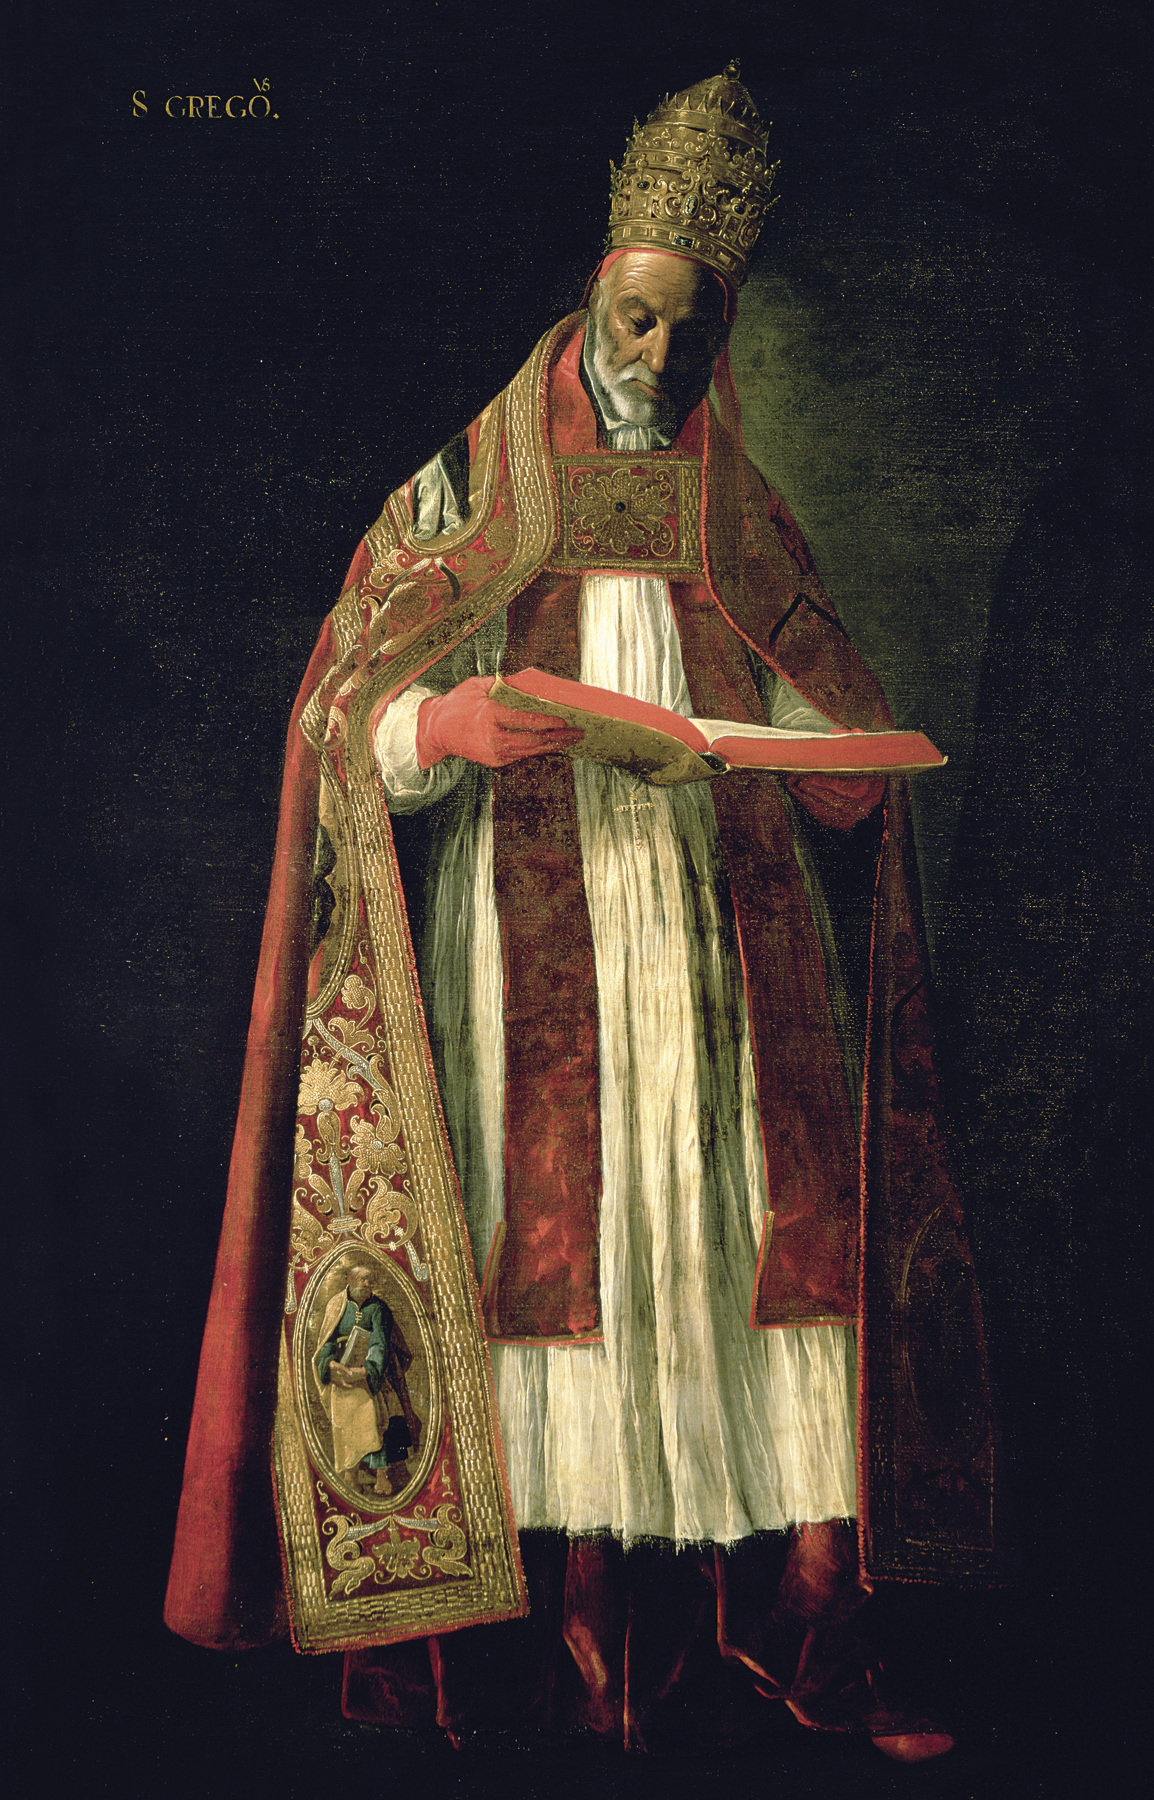 Pintura. Homem de barbas brancas, usando coroa longa dourada e túnica branca e vermelha sob manto vermelho e dourado. Ele usa luvas vermelhas e segura um livro grosso  aberto.